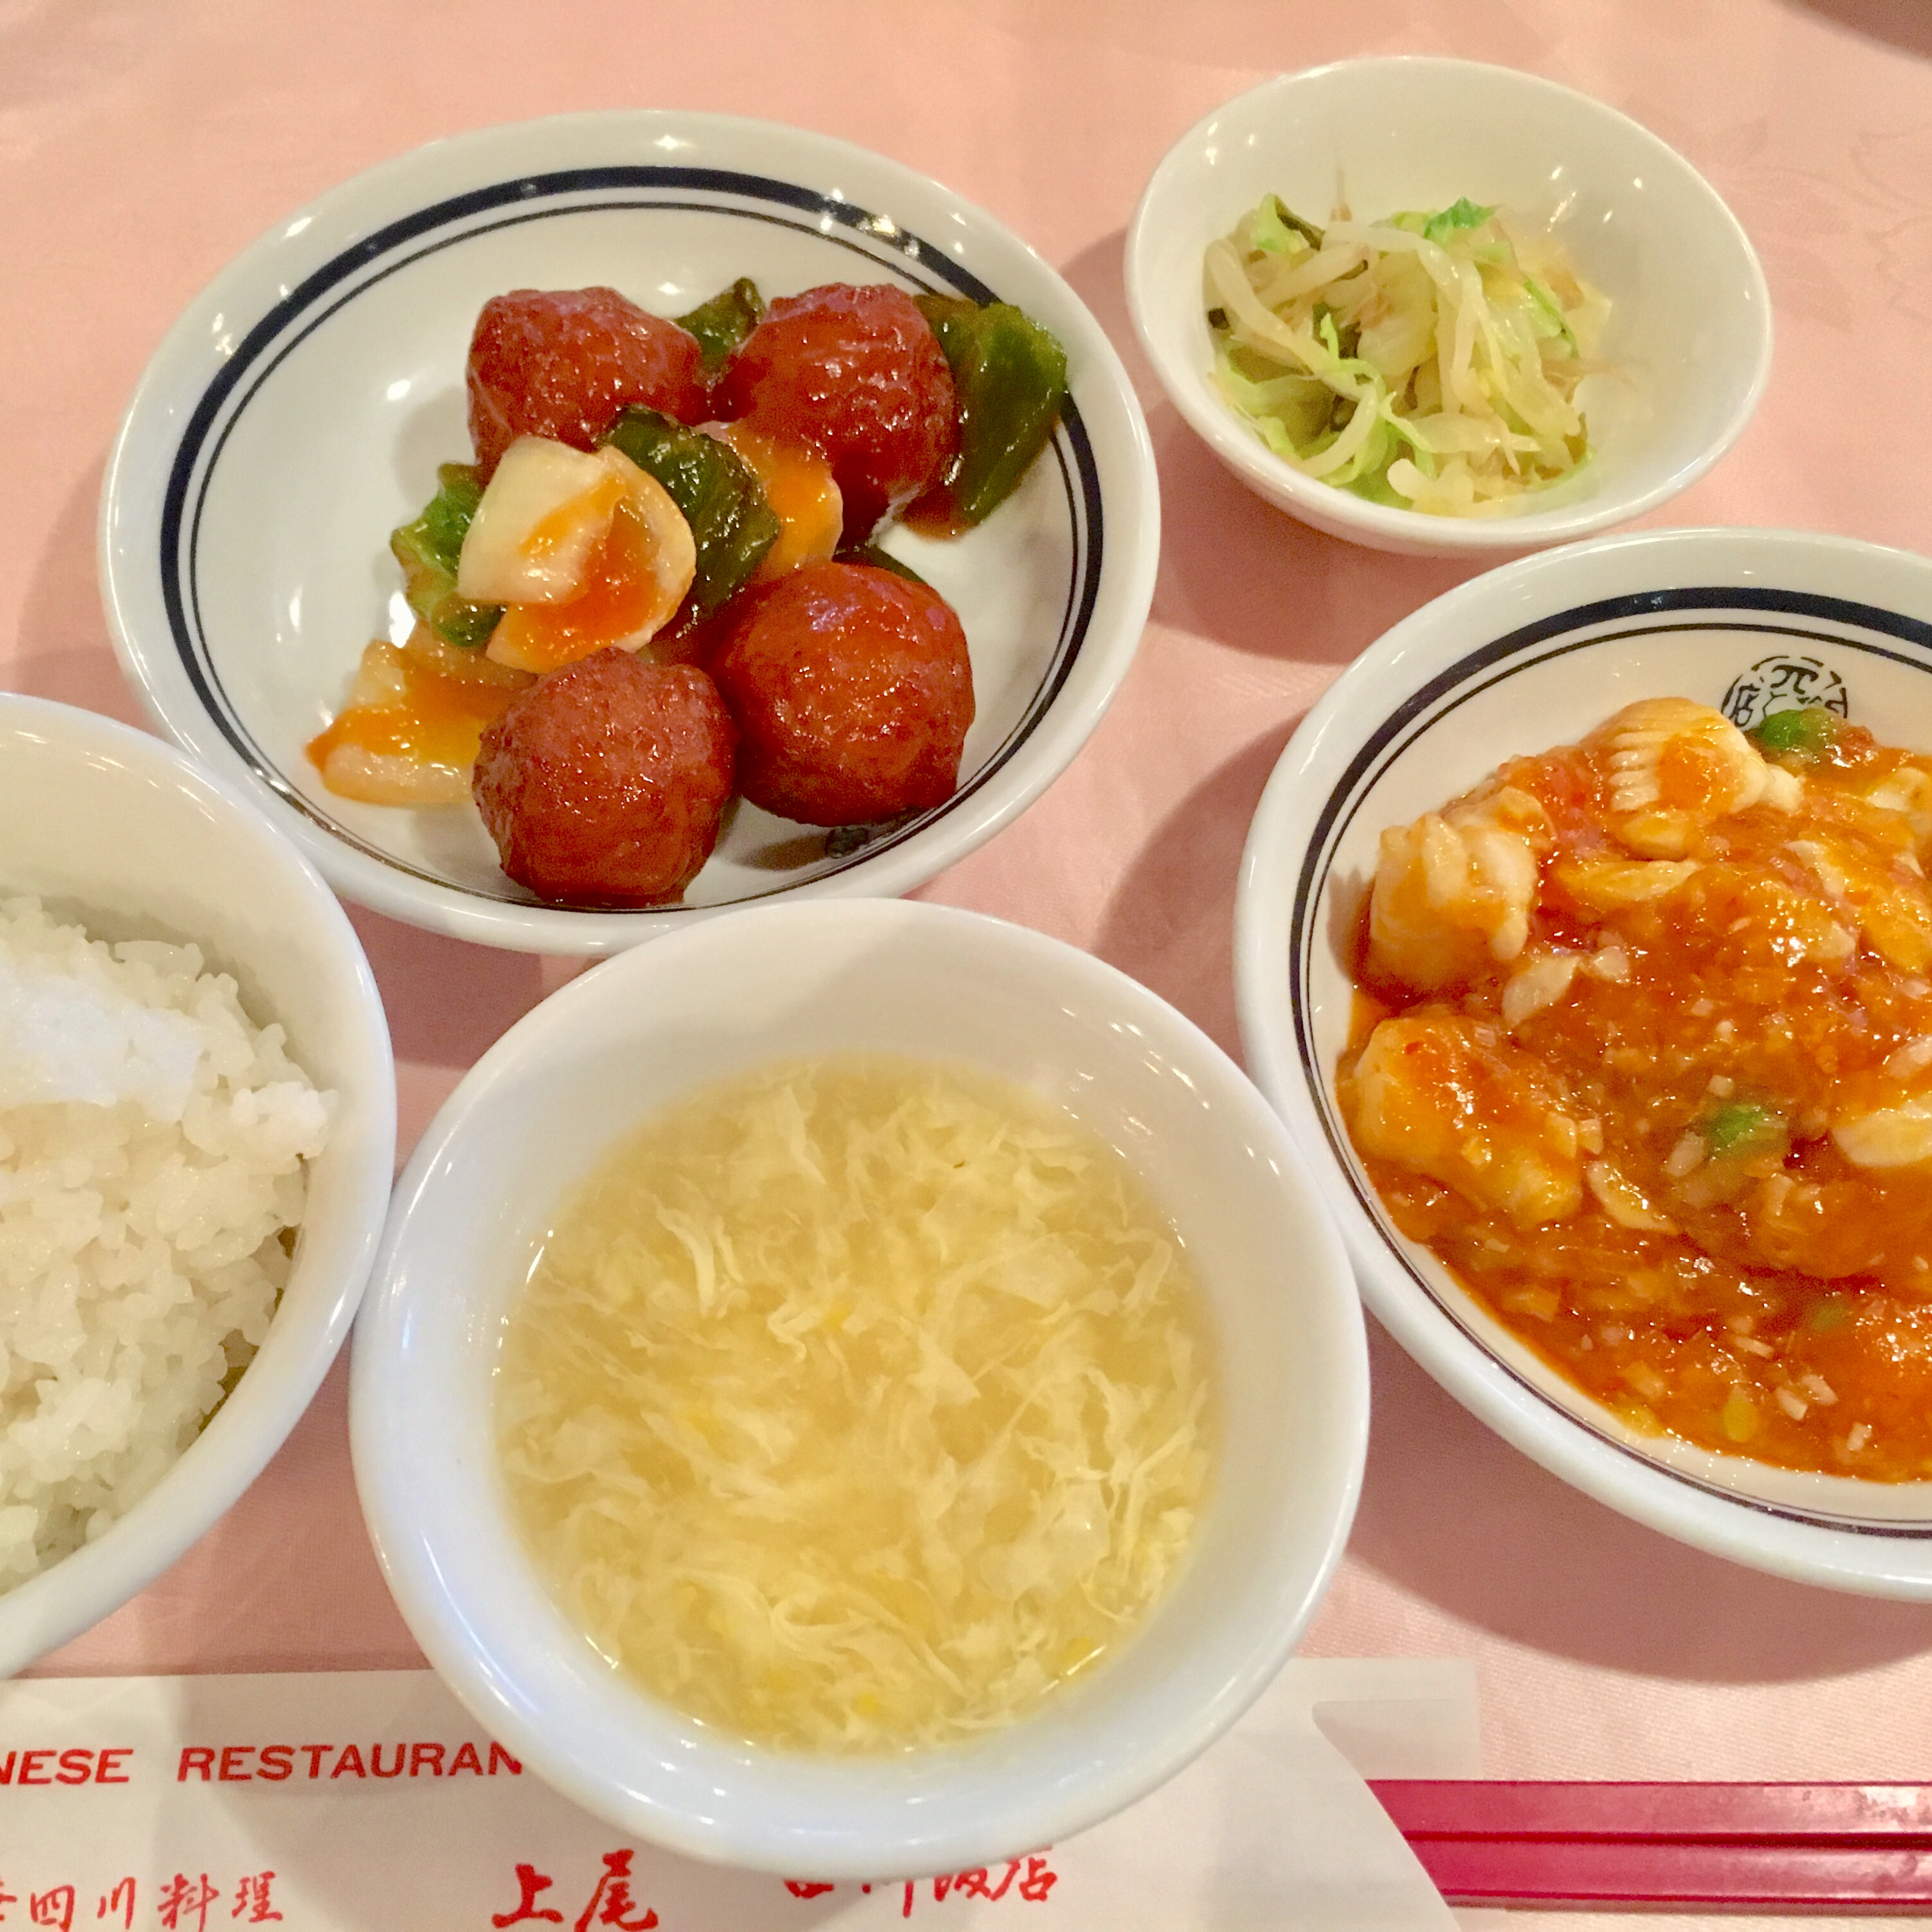 丸広の『上尾四川飯店』で中華ランチを食べたレビュー